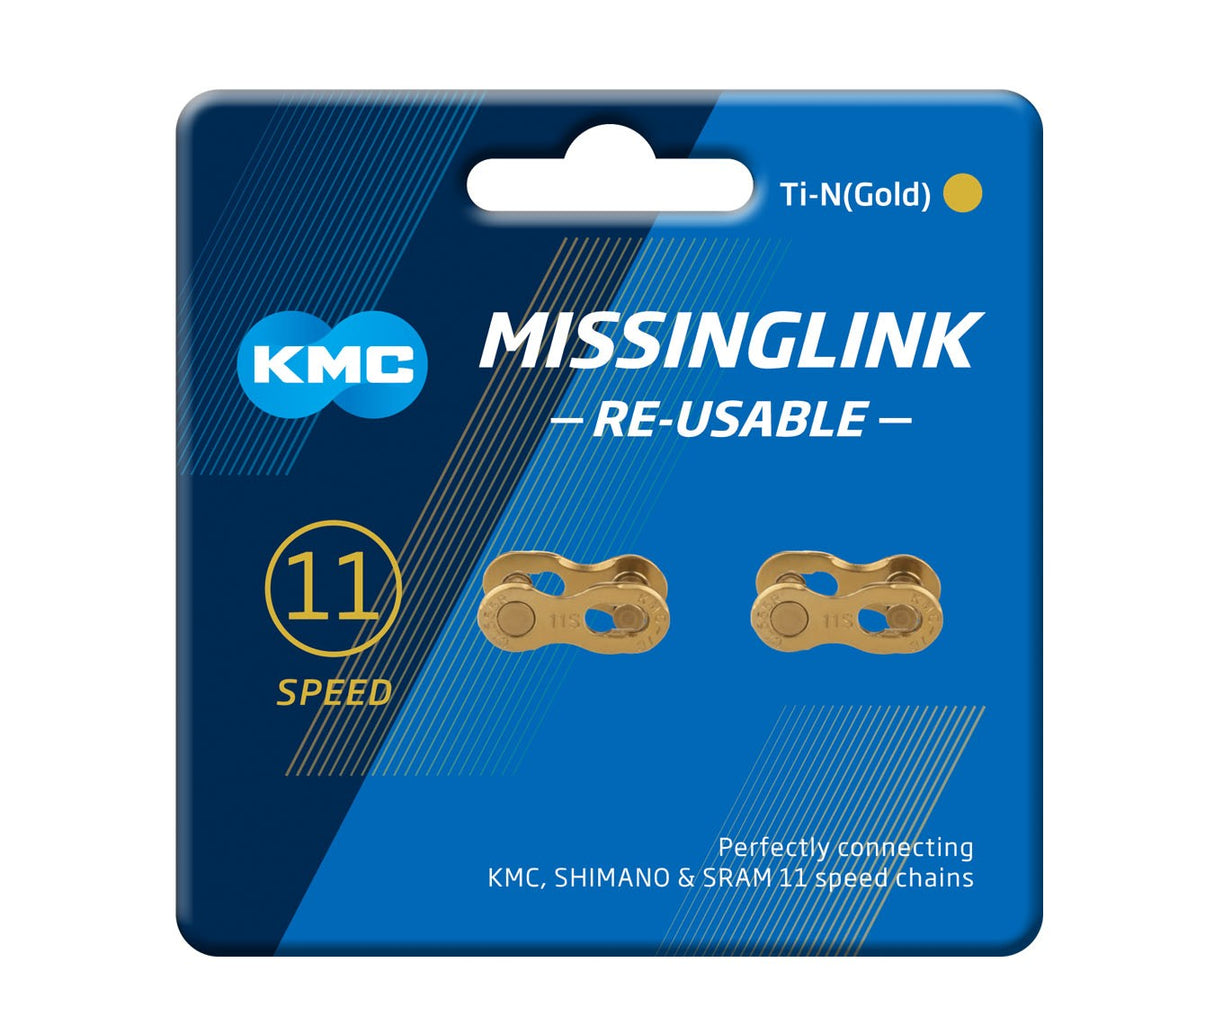 MissingLink 11R Ti-N (Gold)